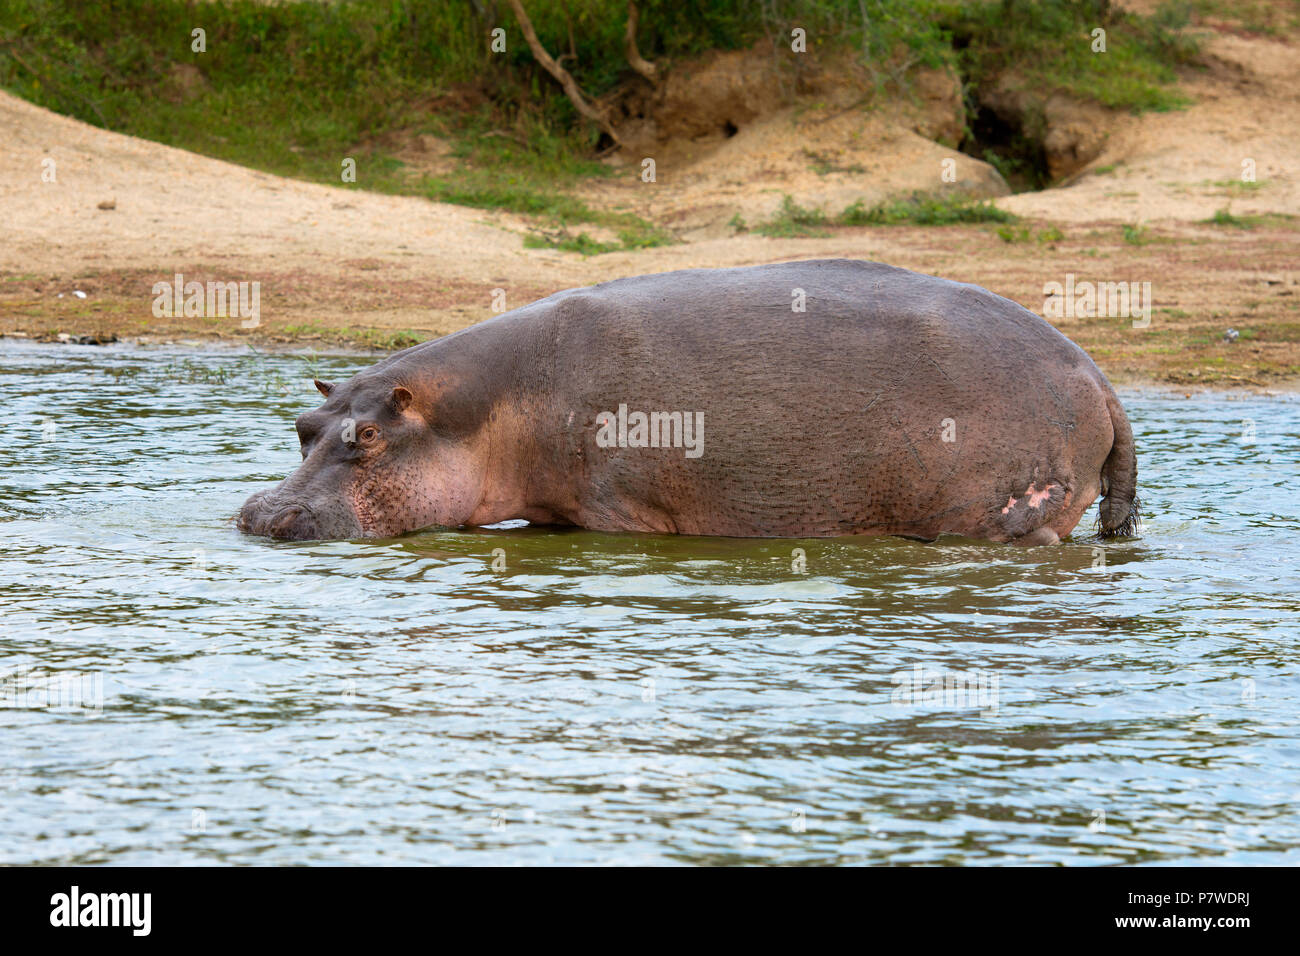 L'hippopotame, Hippopotamus amphibius, Canal Kazinga, Ouganda Afrique de l'Est Banque D'Images